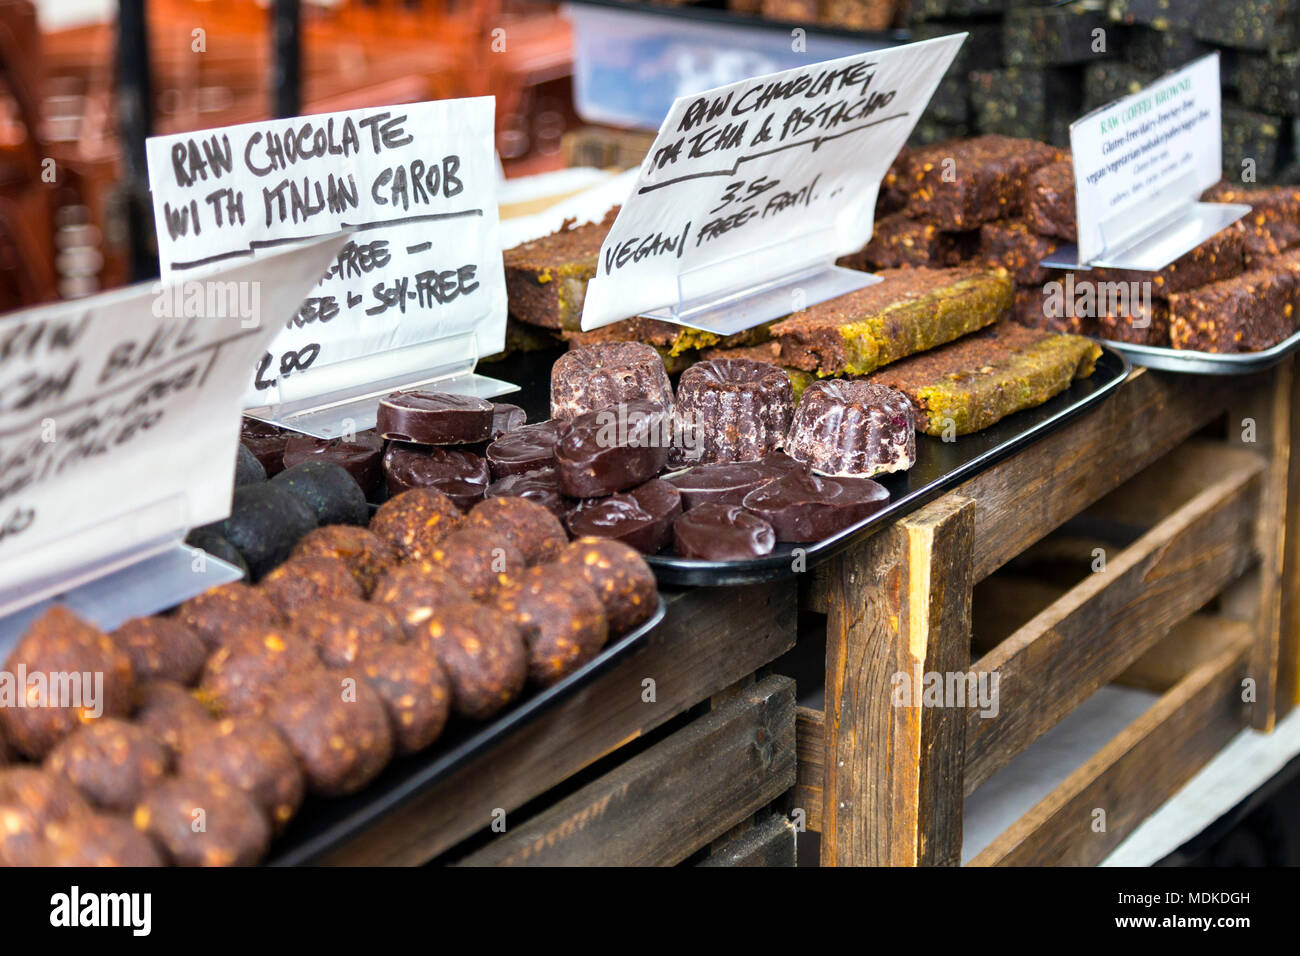 Raw Vegan Leckereien und Desserts an der Brick Lane, London, UK Stockfoto